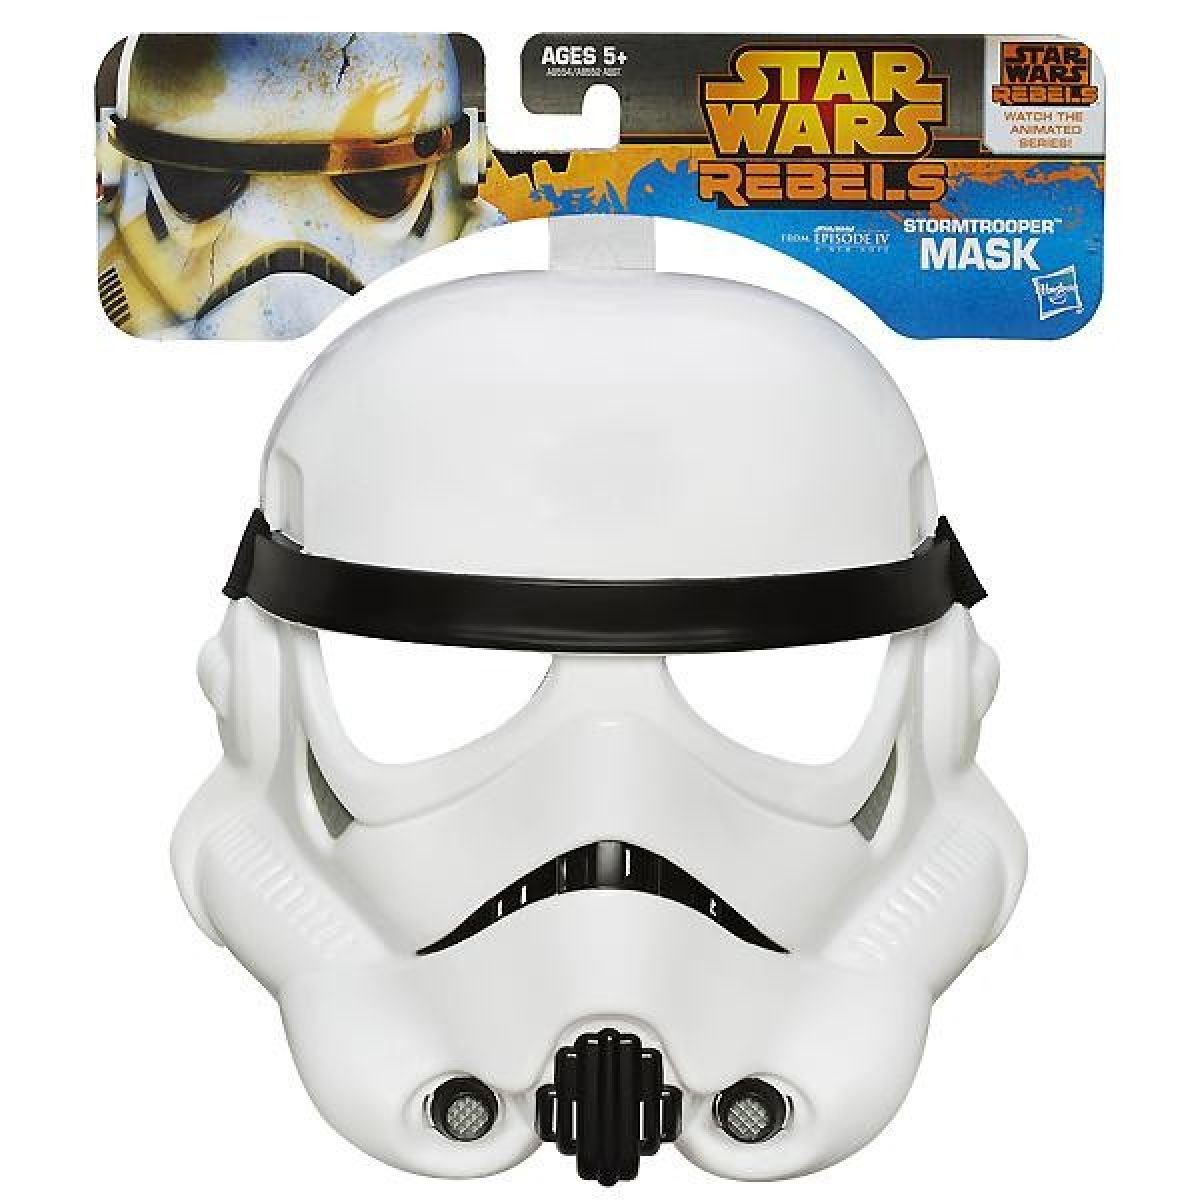 Hasbro Star Wars rebelská maska - Stormtrooper